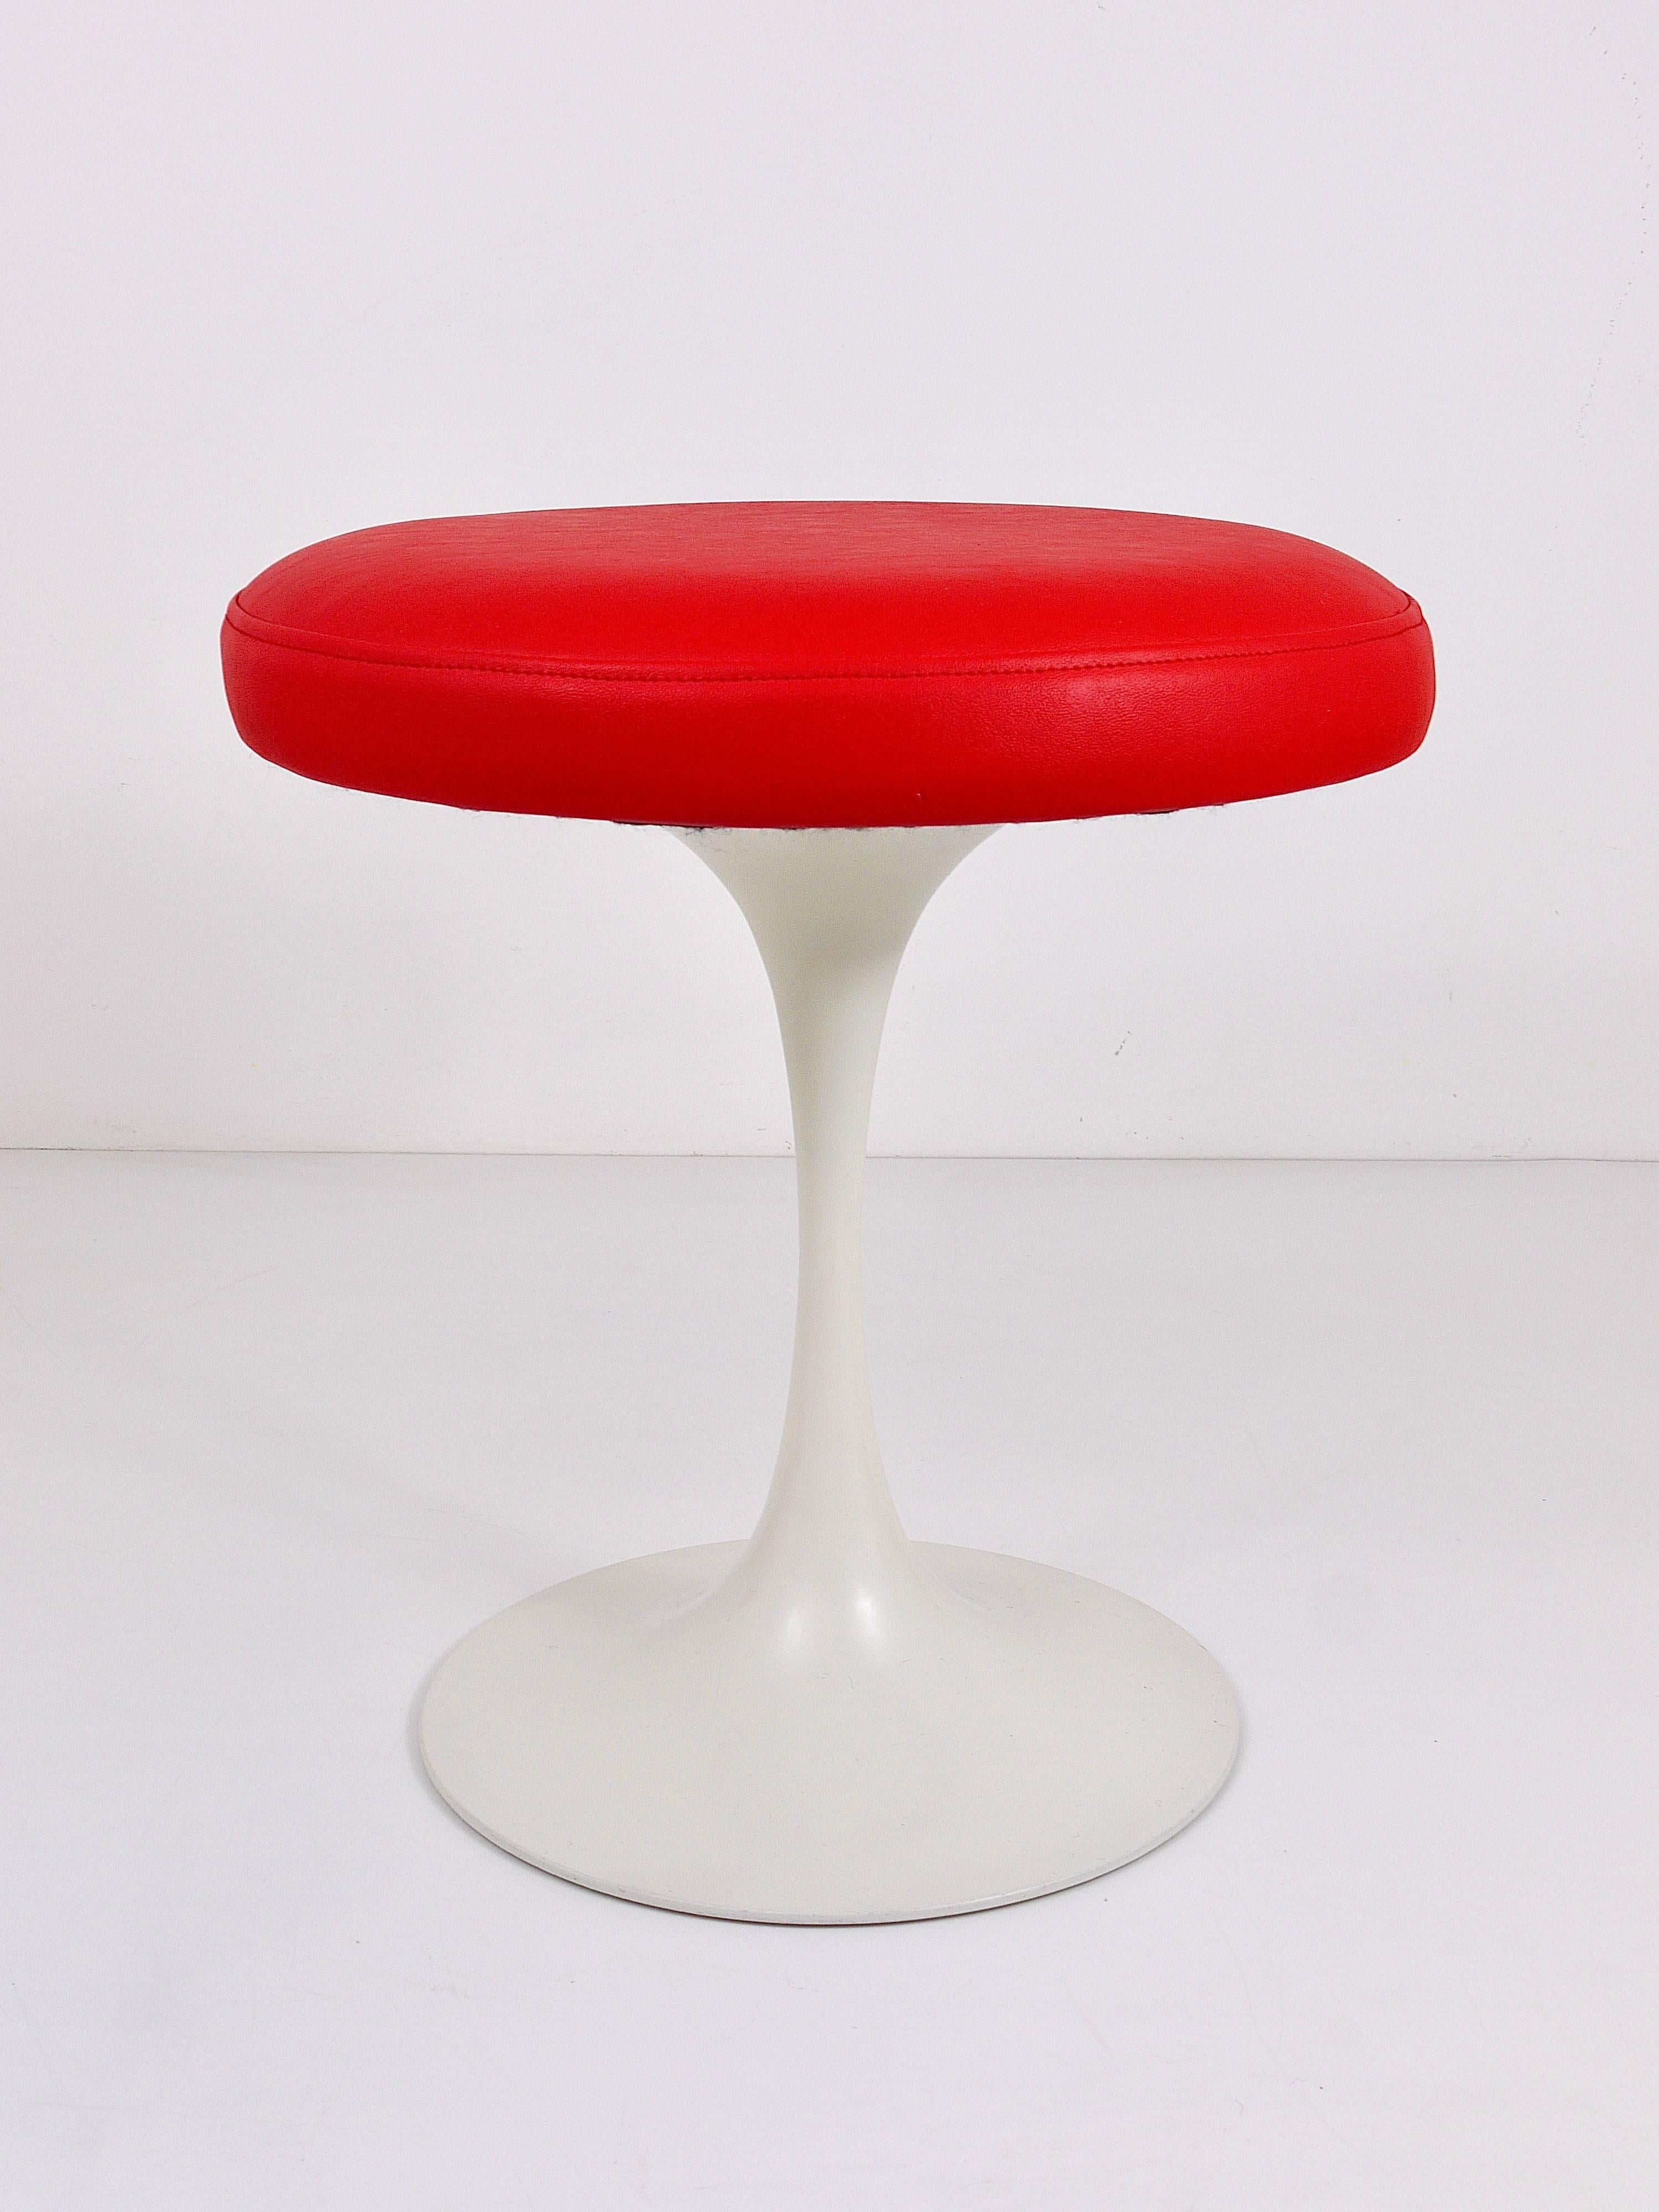 Ein schöner Space-Age-Hocker aus den 1960er Jahren mit weißem Tulpenfuß und leuchtend roter Kunstlederpolsterung. Dieses von Maurice Burke für Arkana im Vereinigten Königreich entworfene Möbelstück erinnert an die Entwürfe von Eero Saarinen für